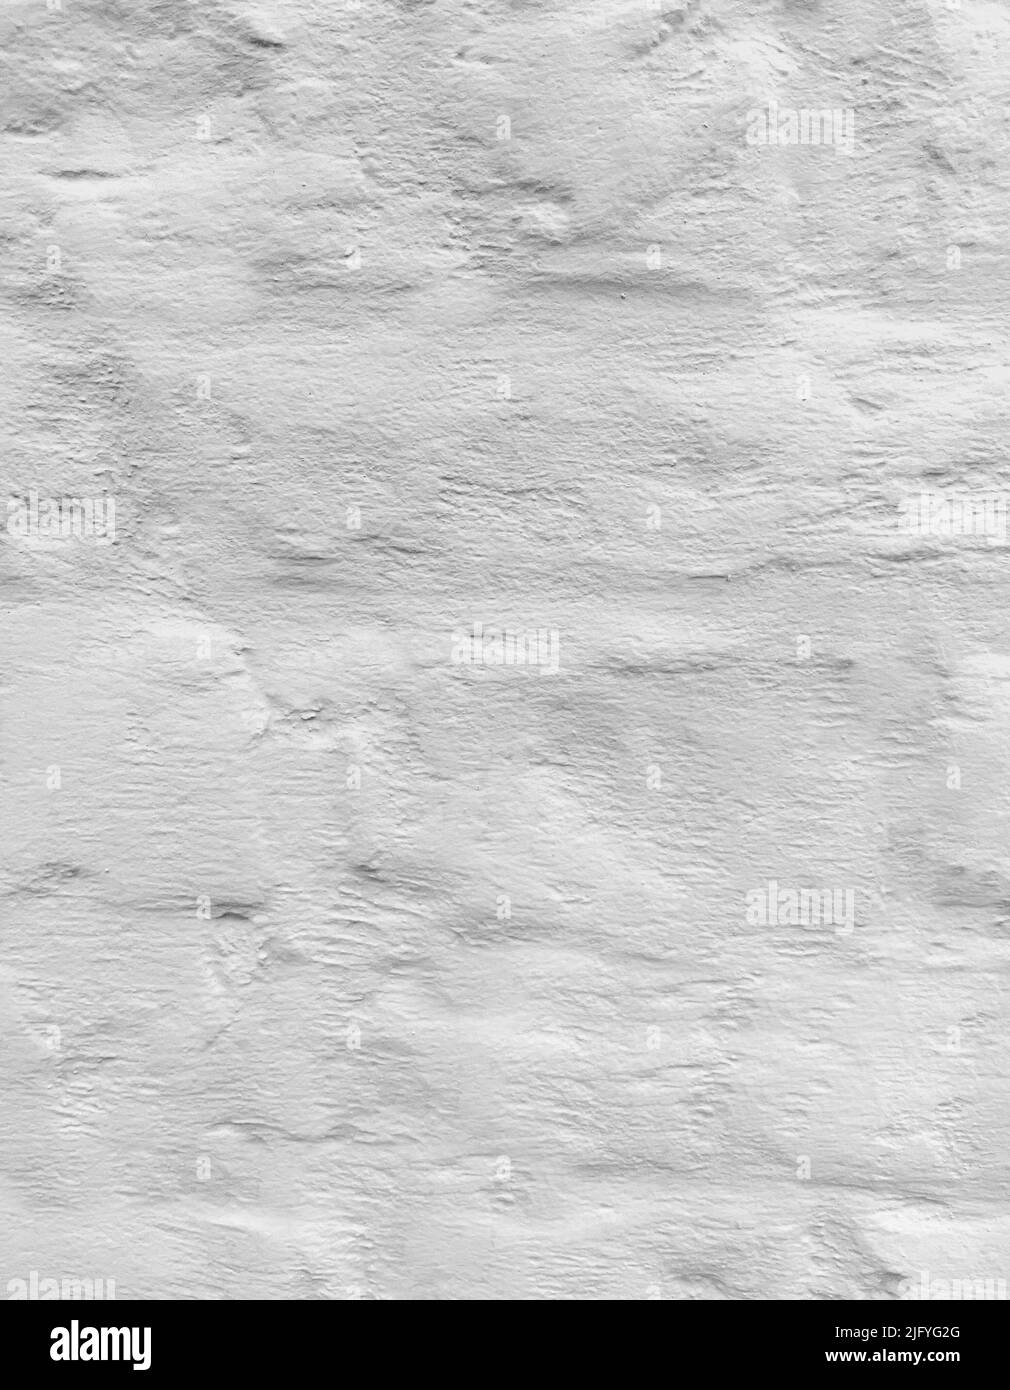 en el medio de la nada famélico Increíble Primer plano de una textura de yeso o cemento blanco voluminoso e irregular  Fotografía de stock - Alamy